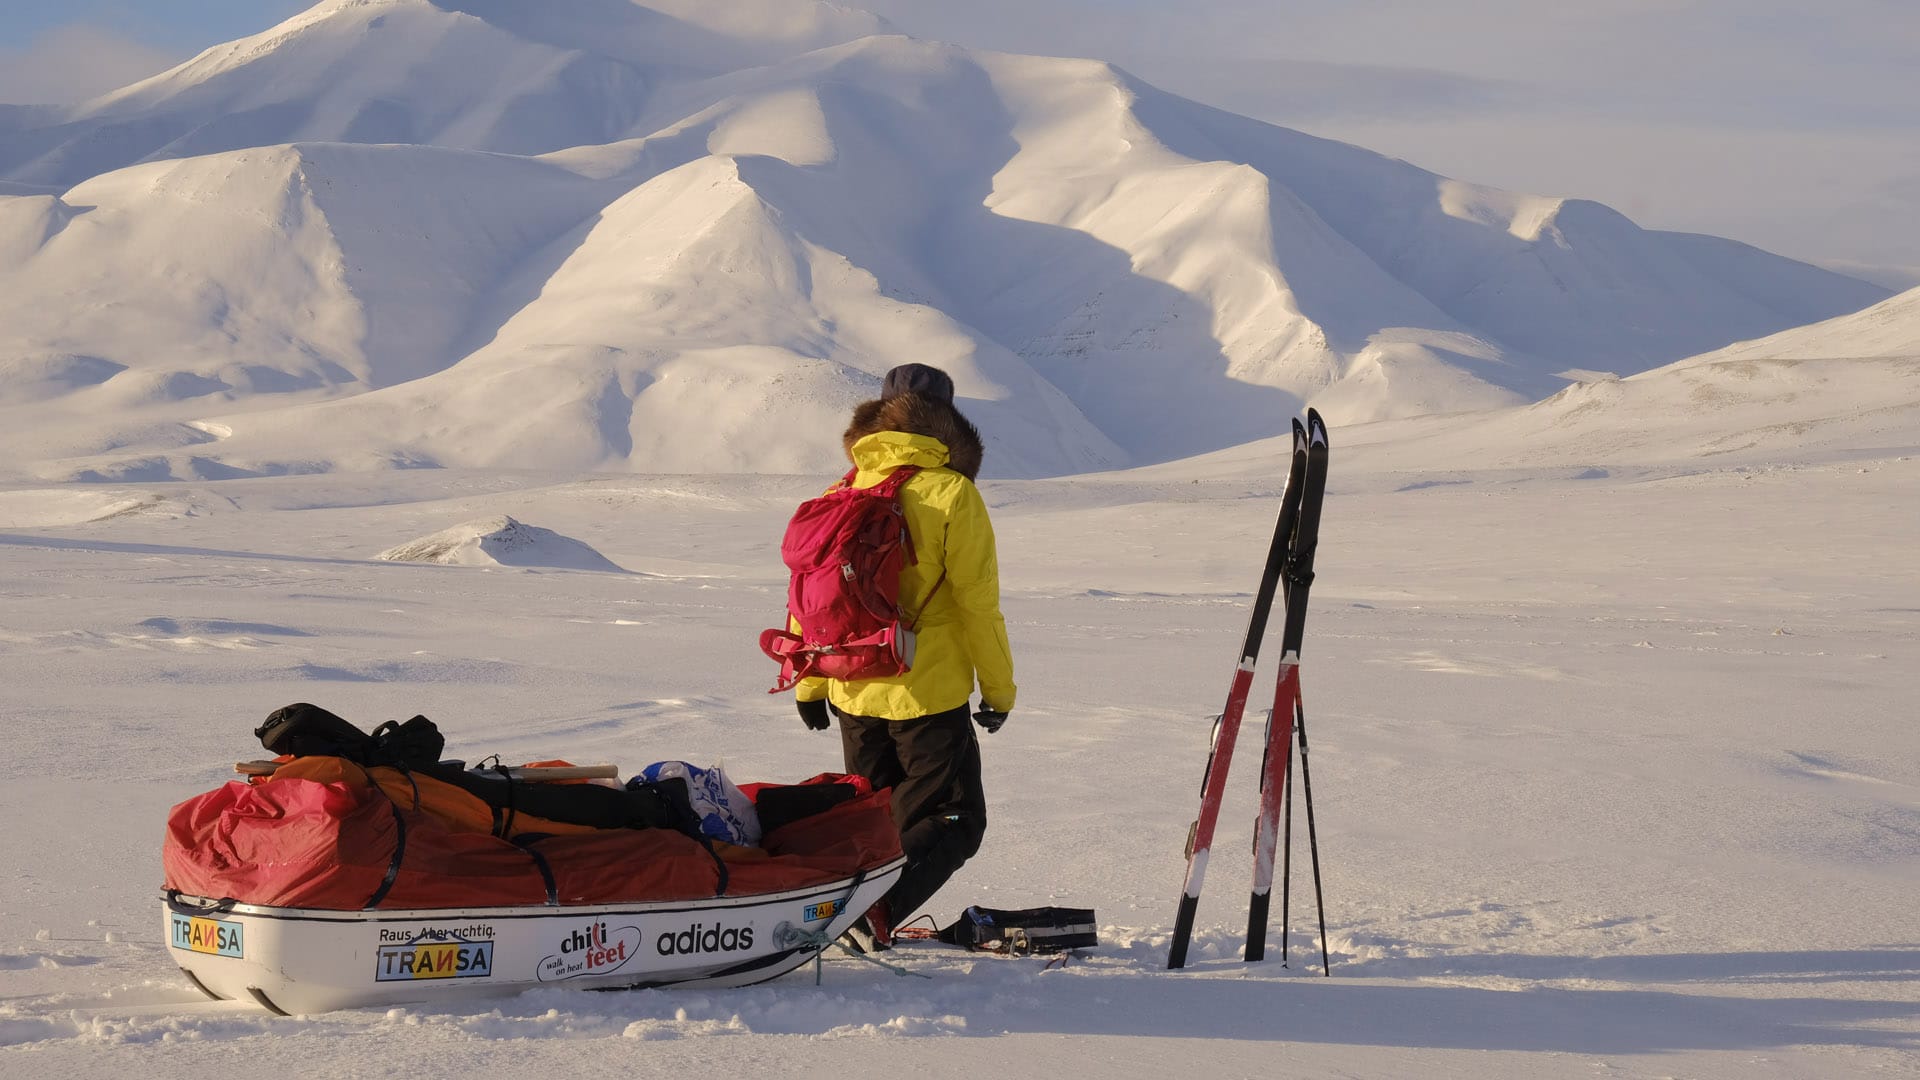 Mit Fahrrad, zu Fuß, auf Skiern und mit Schlitten erreichte die Extremsportlerin sowohl den Südpol als auch den Nordpol